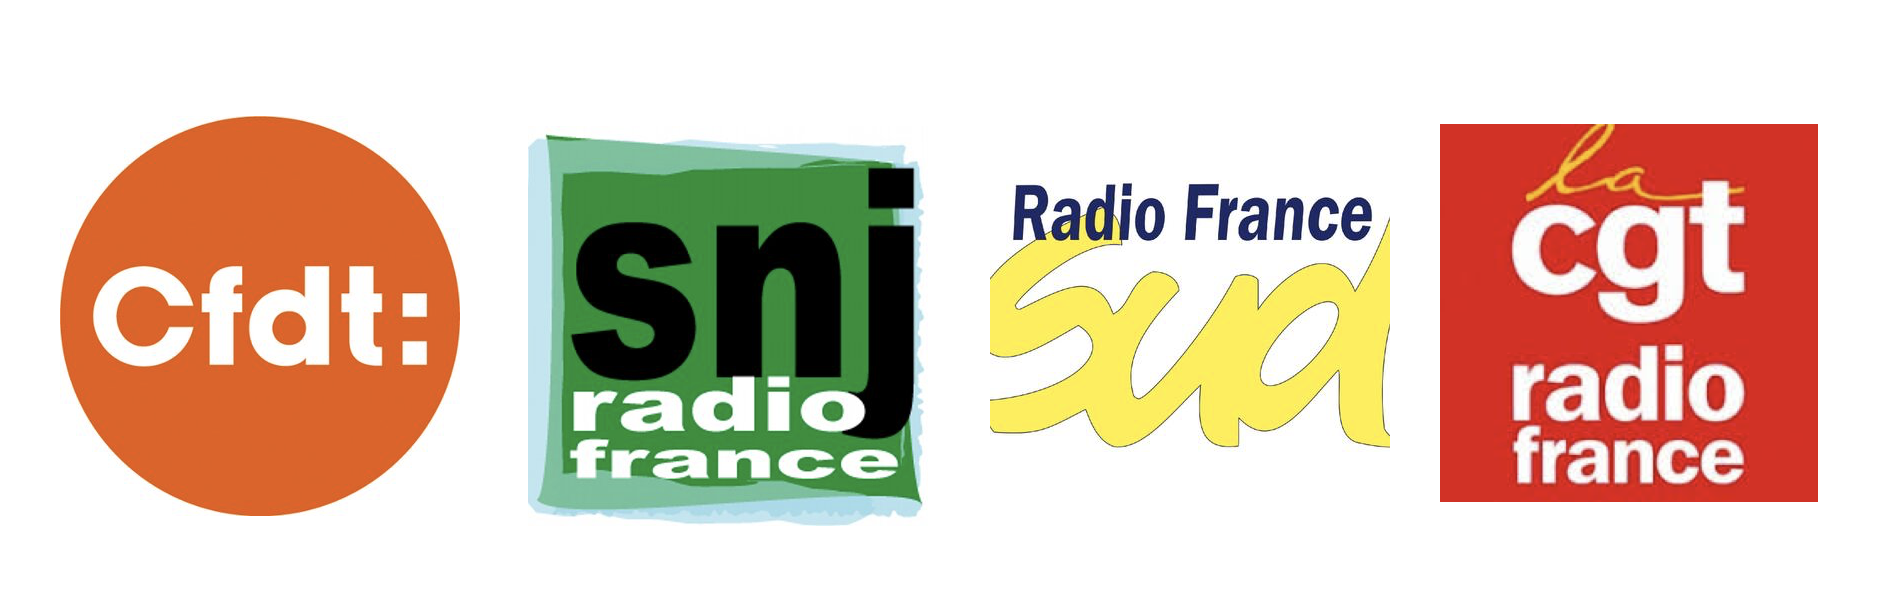 Radio France : les syndicats appellent à la grève 